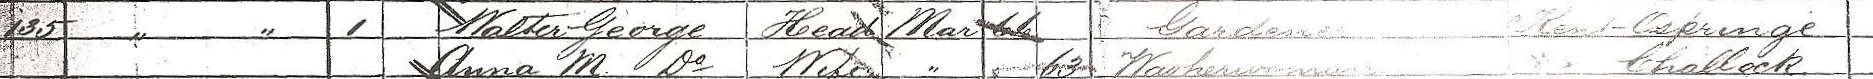 1881 census